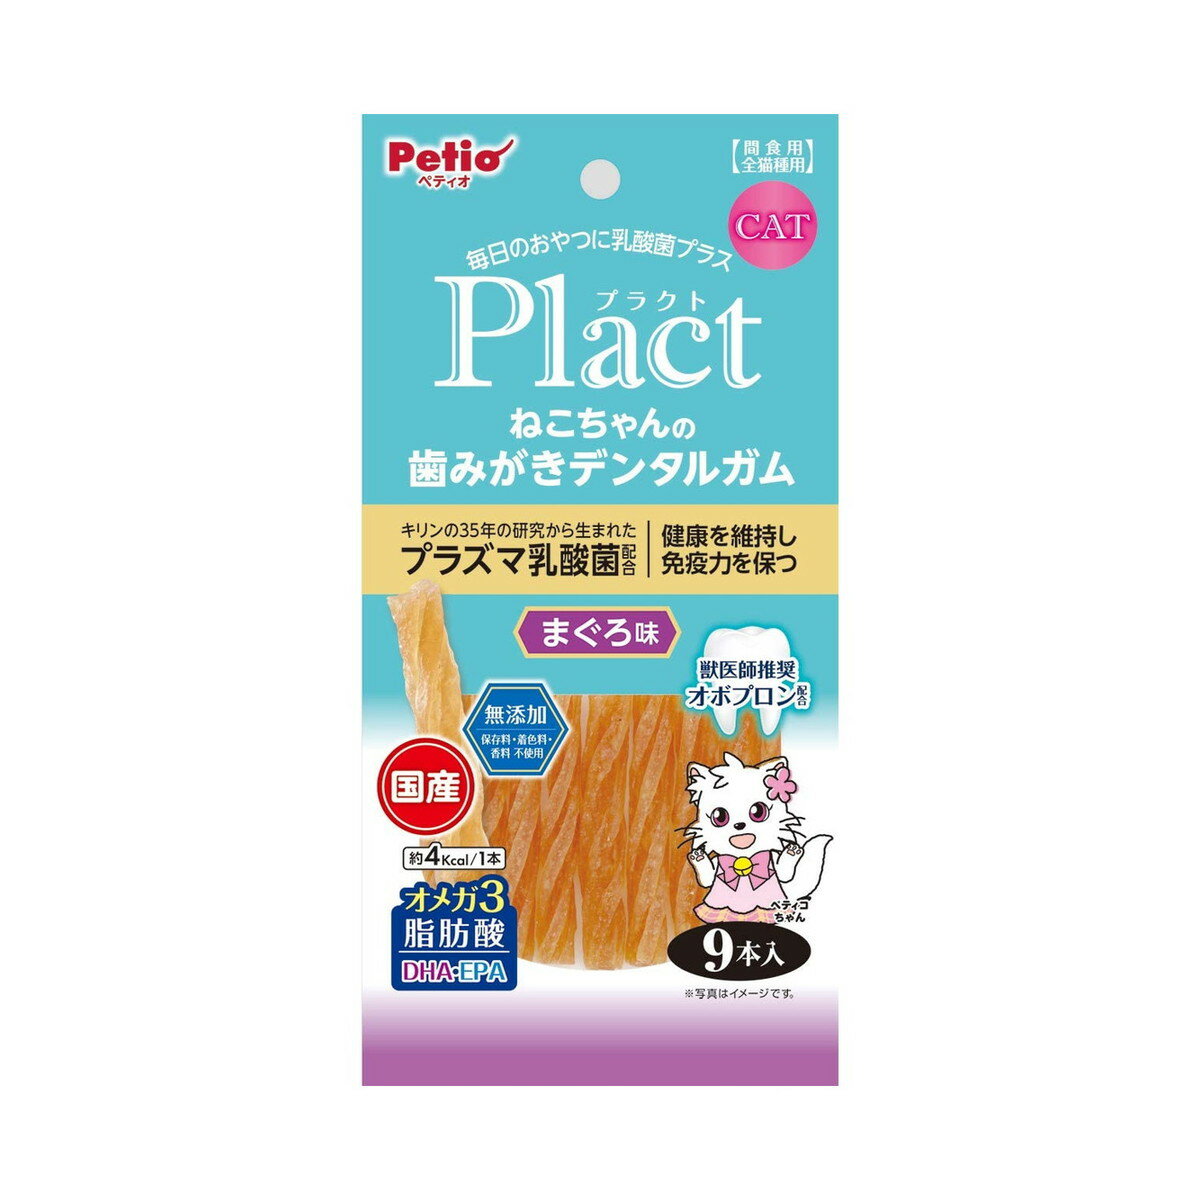 商品名：PETIO ペティオ プラクト ねこちゃんの 歯みがきデンタルガム まぐろ味 9本入内容量：9本入JANコード：4903588137419発売元、製造元、輸入元又は販売元：PETIO原産国：日本商品番号：101-m001-4903588137419商品説明Plactはペットの健康を考えて乳酸菌をプラスしたブランドです。噛むことで牛皮のコラーゲン繊維が歯垢をからめて落とします。まぐろ味で食いつき抜群グレインフリーだからネコちゃんの健康サポート食物アレルギーケアができる。保存料・着色料・香料無添加。広告文責：アットライフ株式会社TEL 050-3196-1510 ※商品パッケージは変更の場合あり。メーカー欠品または完売の際、キャンセルをお願いすることがあります。ご了承ください。